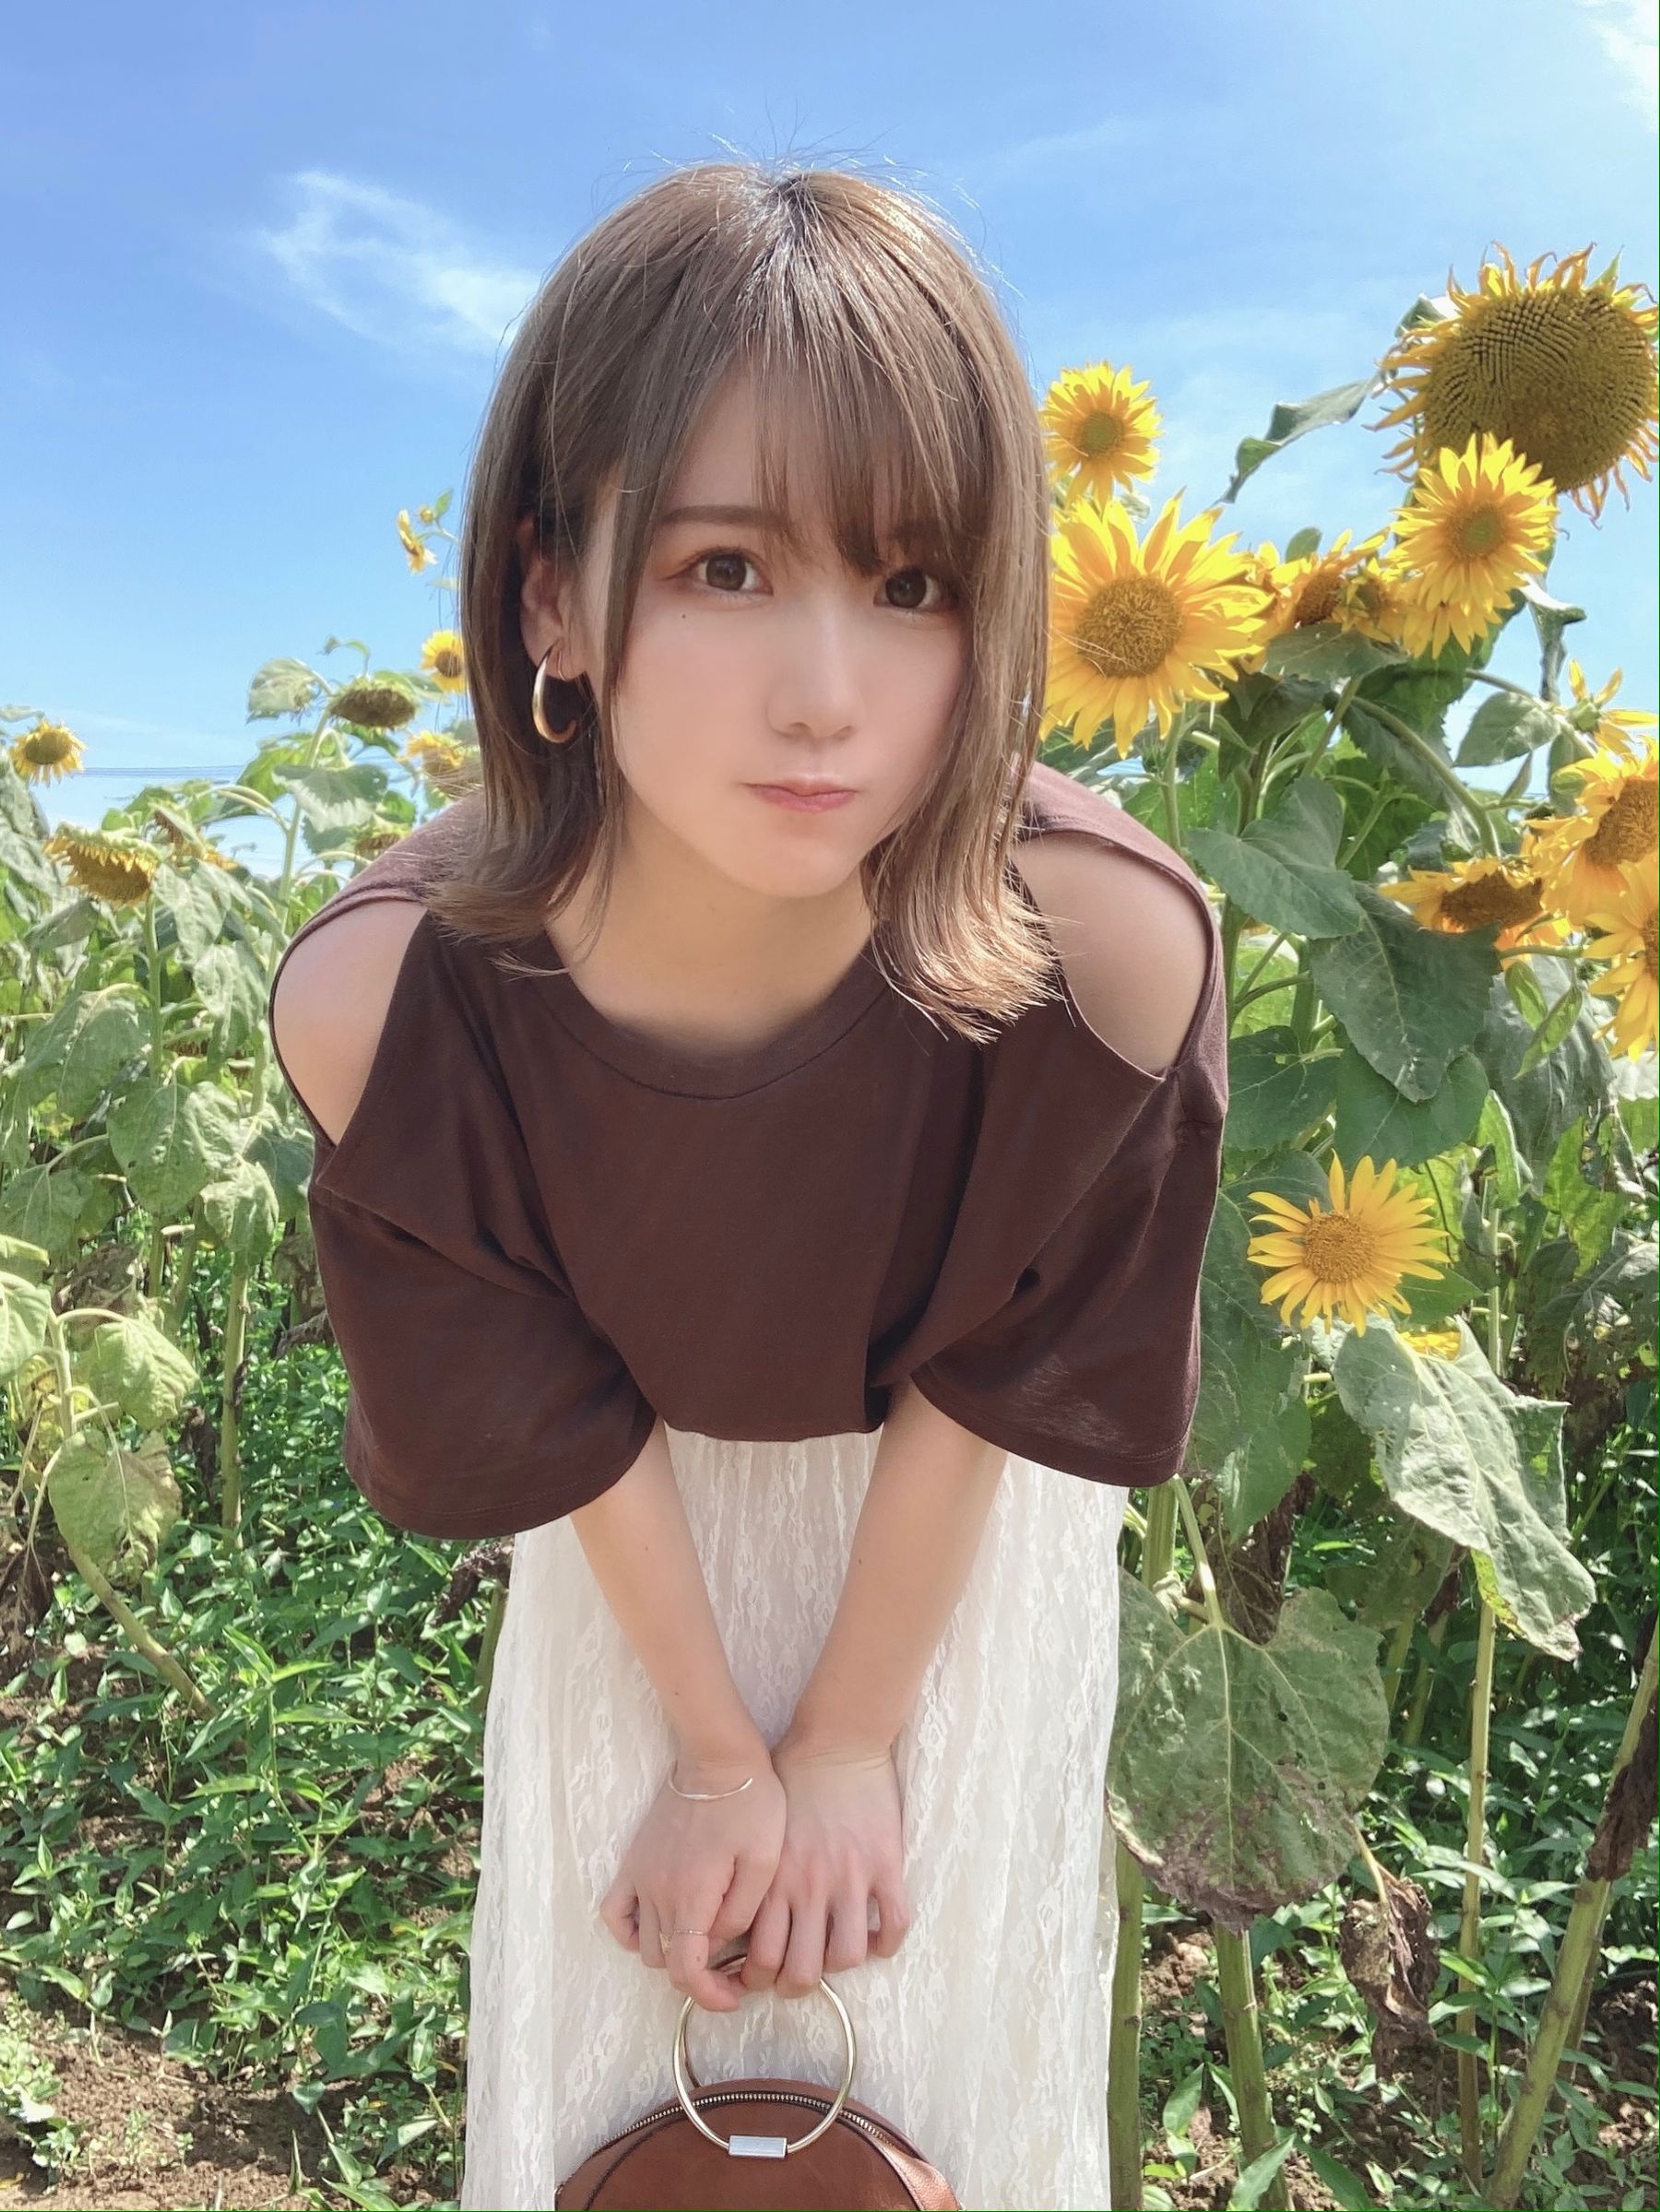 [网红COSER] 日本甜美COSERけんけん[fantia] 2020.08 8月の自撮りいろいろ♡八月的各种自拍照